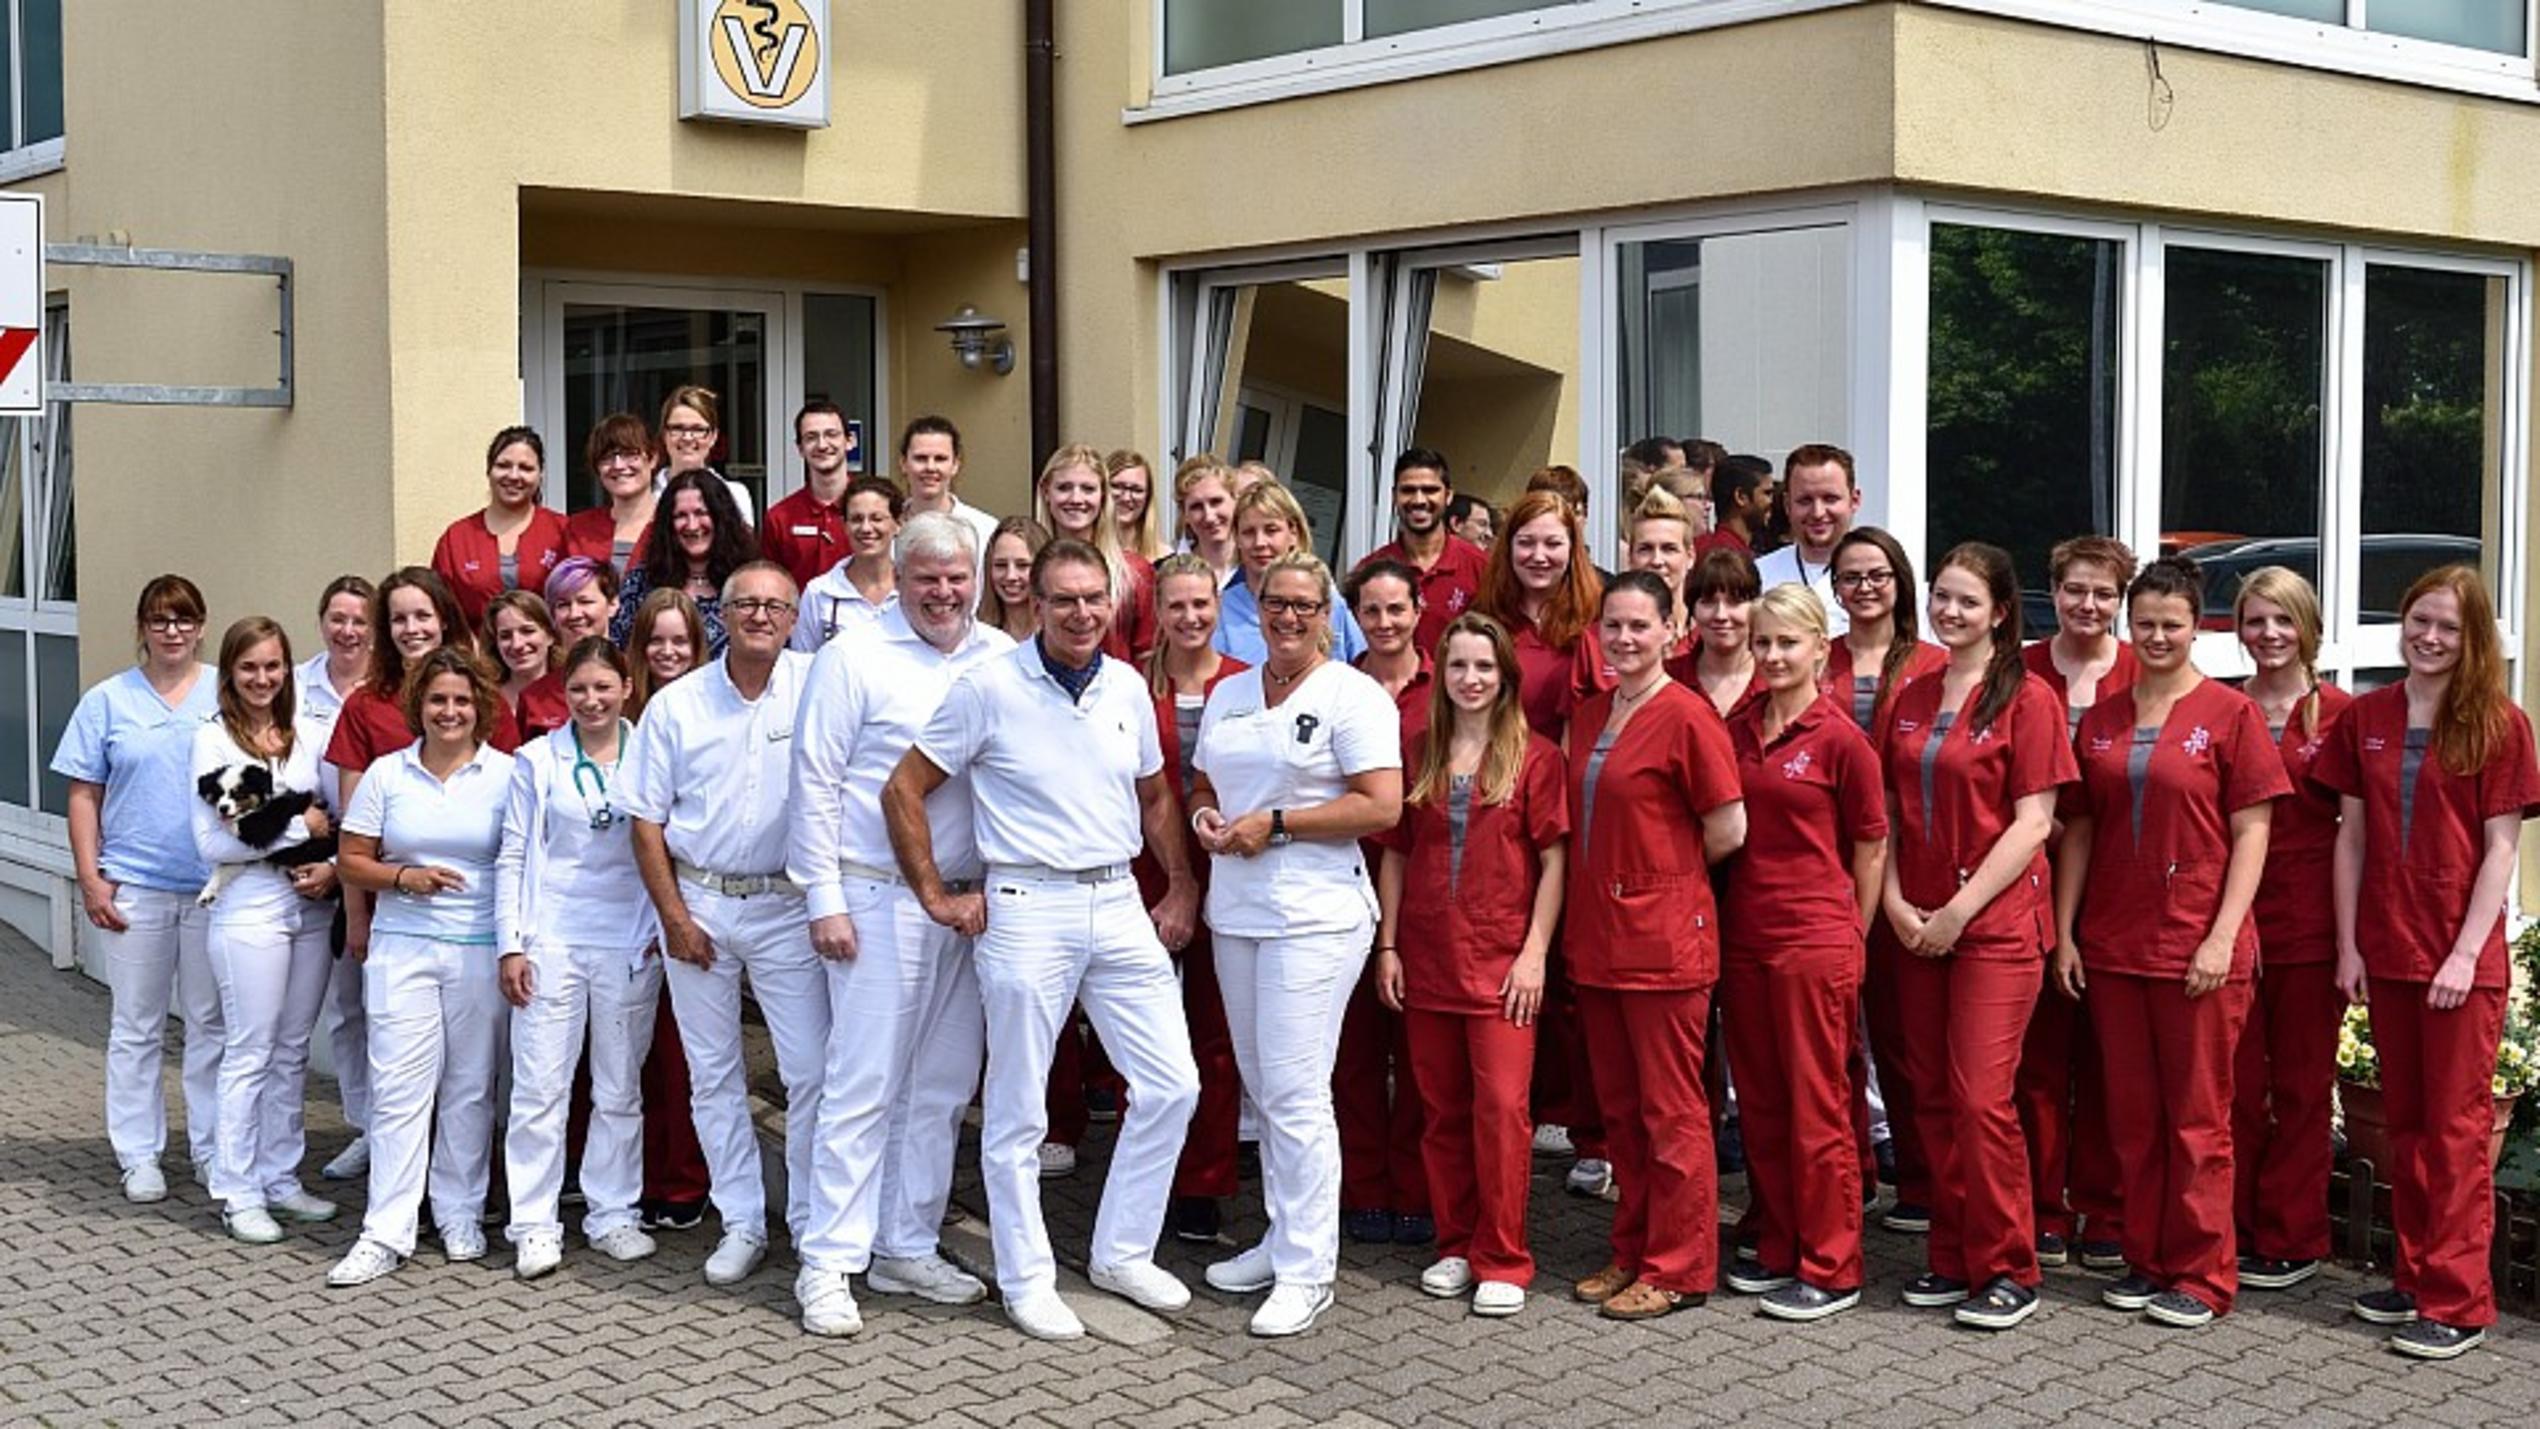 Das Team der Tierklinik Lüneburg - Klinik und Praxis für Kleintiere. (Quelle: www.vox.de)